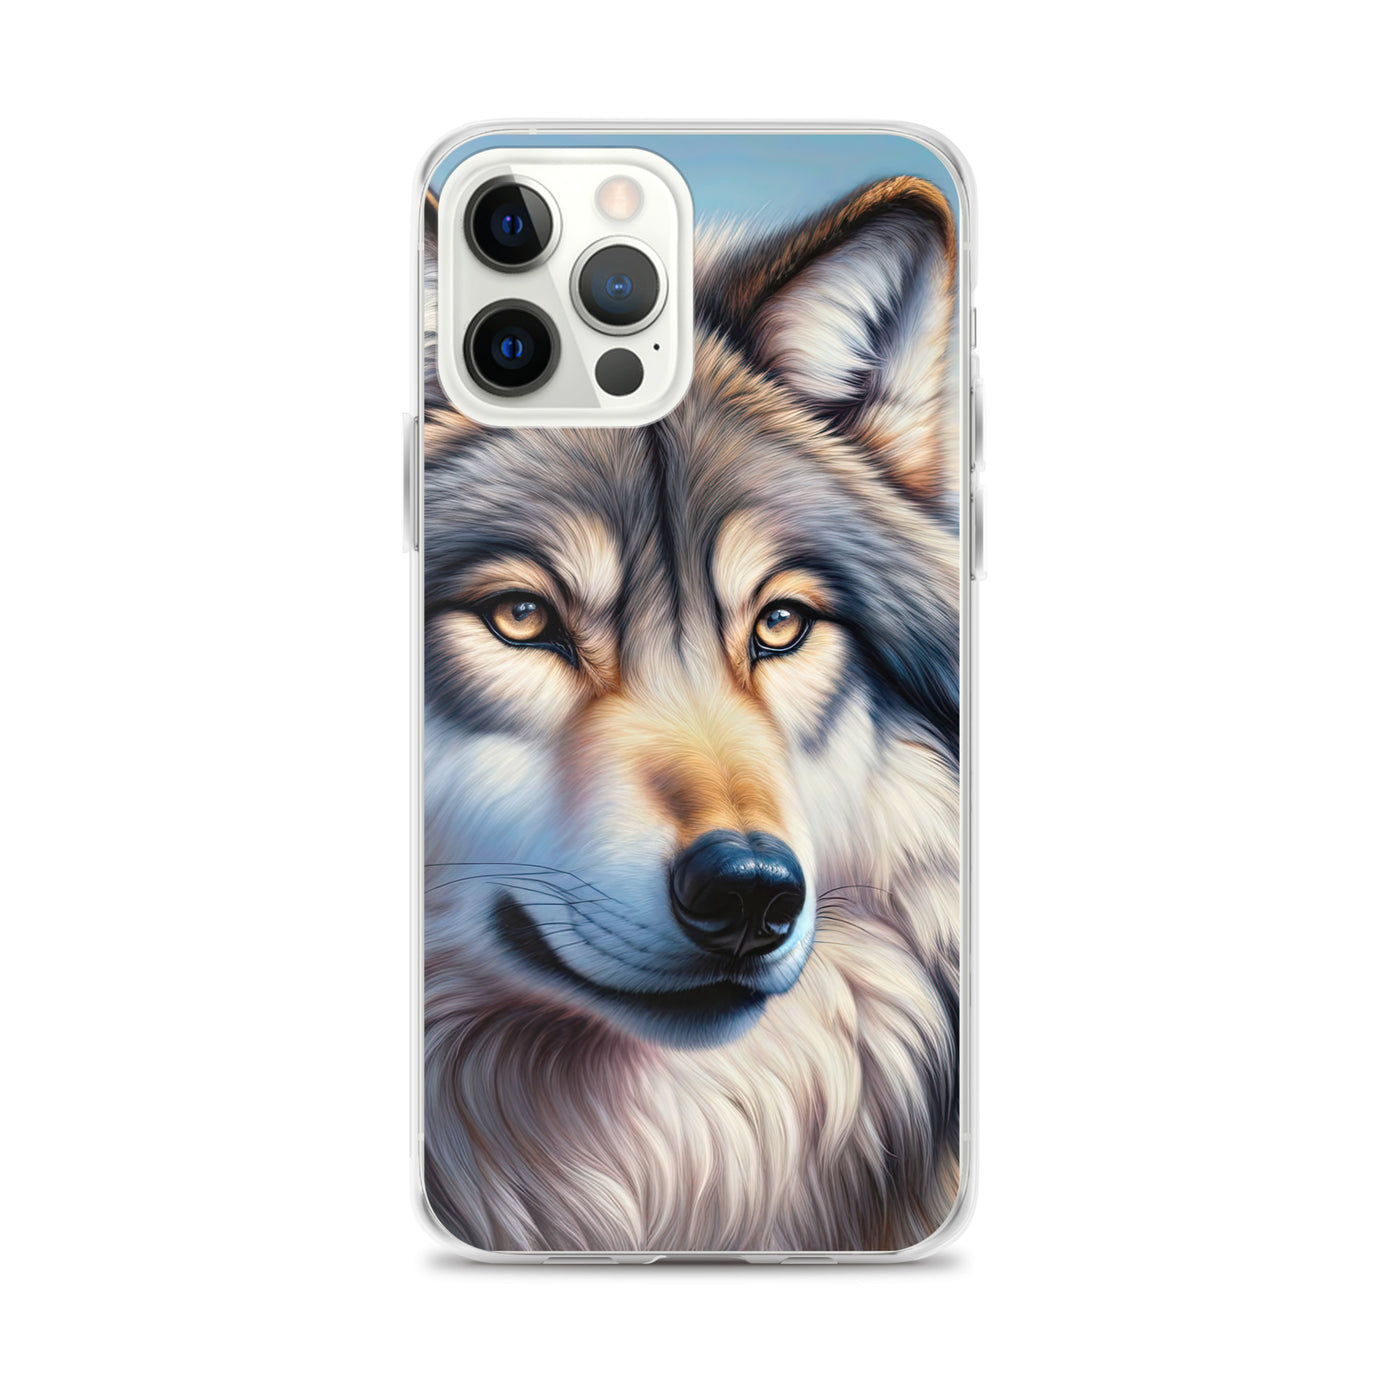 Ölgemäldeporträt eines majestätischen Wolfes mit intensiven Augen in der Berglandschaft (AN) - iPhone Schutzhülle (durchsichtig) xxx yyy zzz iPhone 12 Pro Max